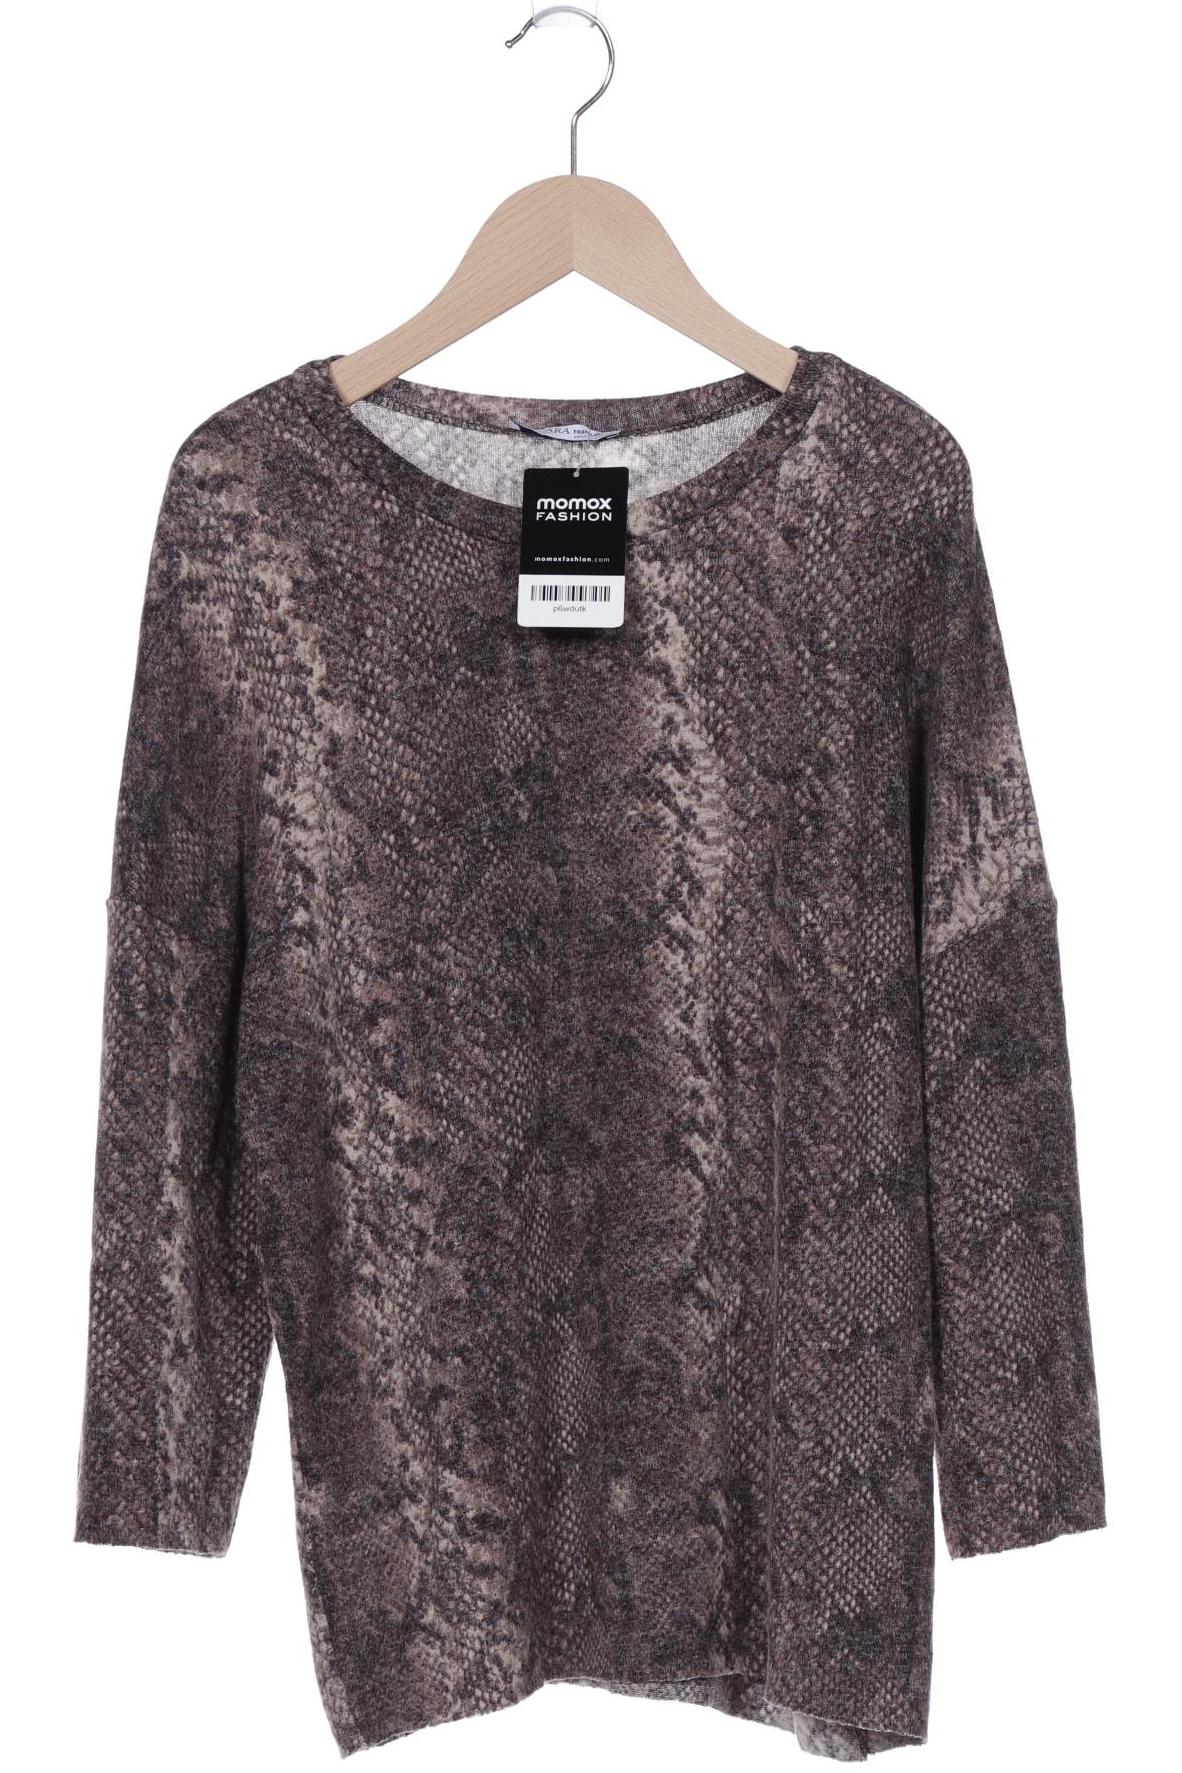 Zara Damen Pullover, braun, Gr. 36 von ZARA